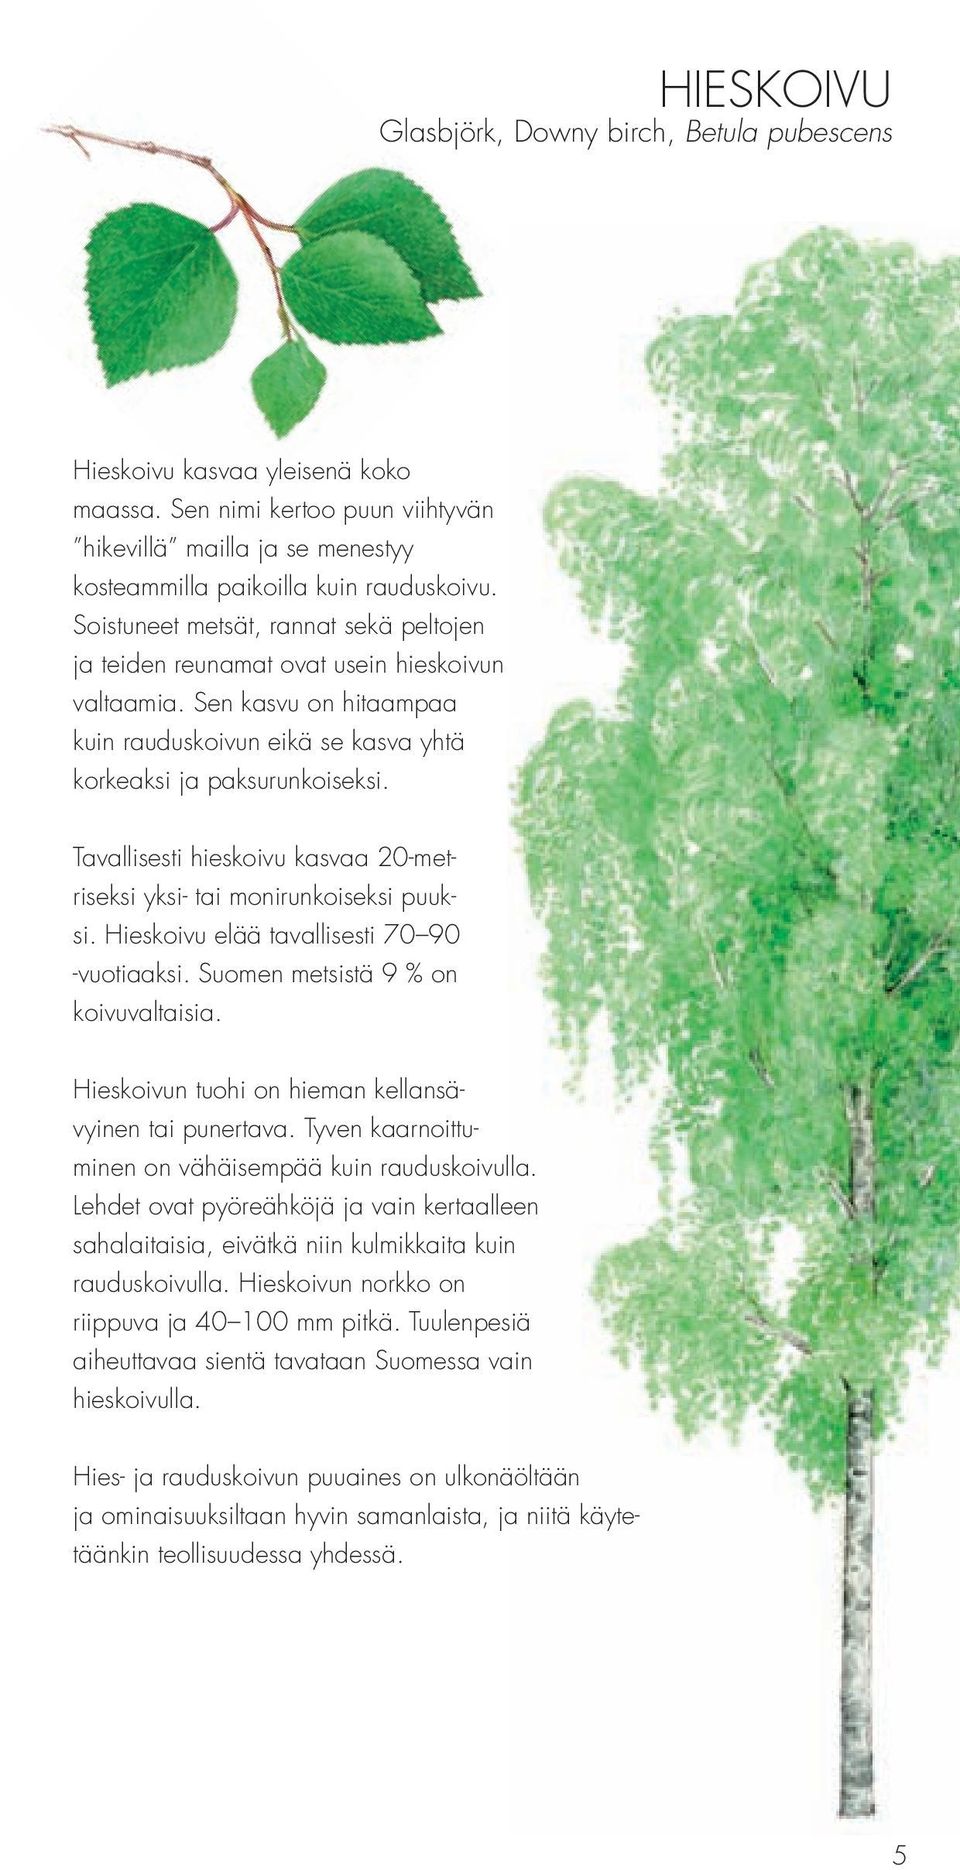 Tavallisesti hieskoivu kasvaa 20-metriseksi yksi- tai monirunkoiseksi puuksi. Hieskoivu elää tavallisesti 70 90 -vuotiaaksi. Suomen metsistä 9 % on koivuvaltaisia.